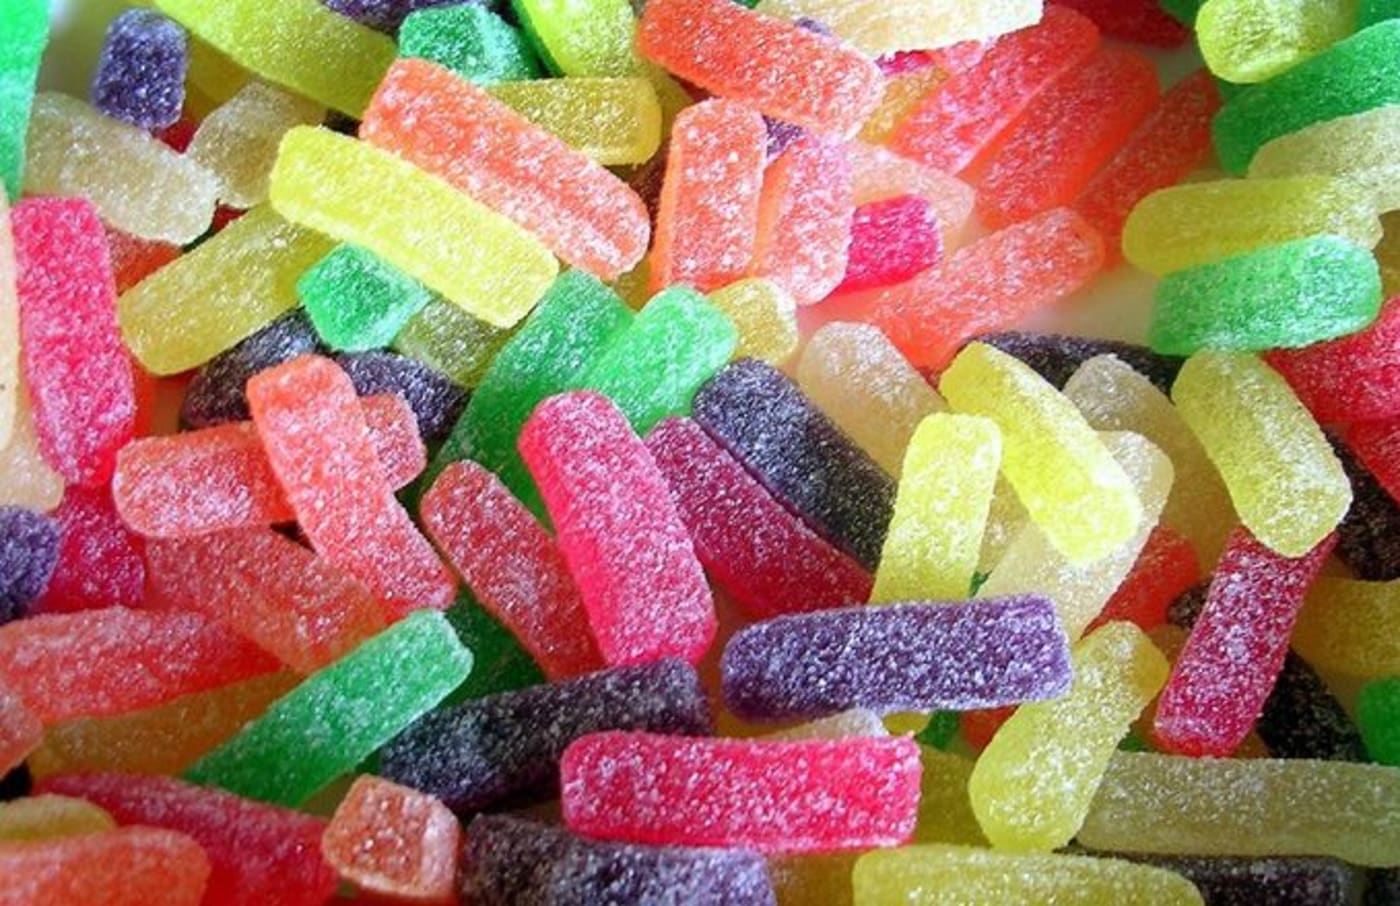 Gummy candy